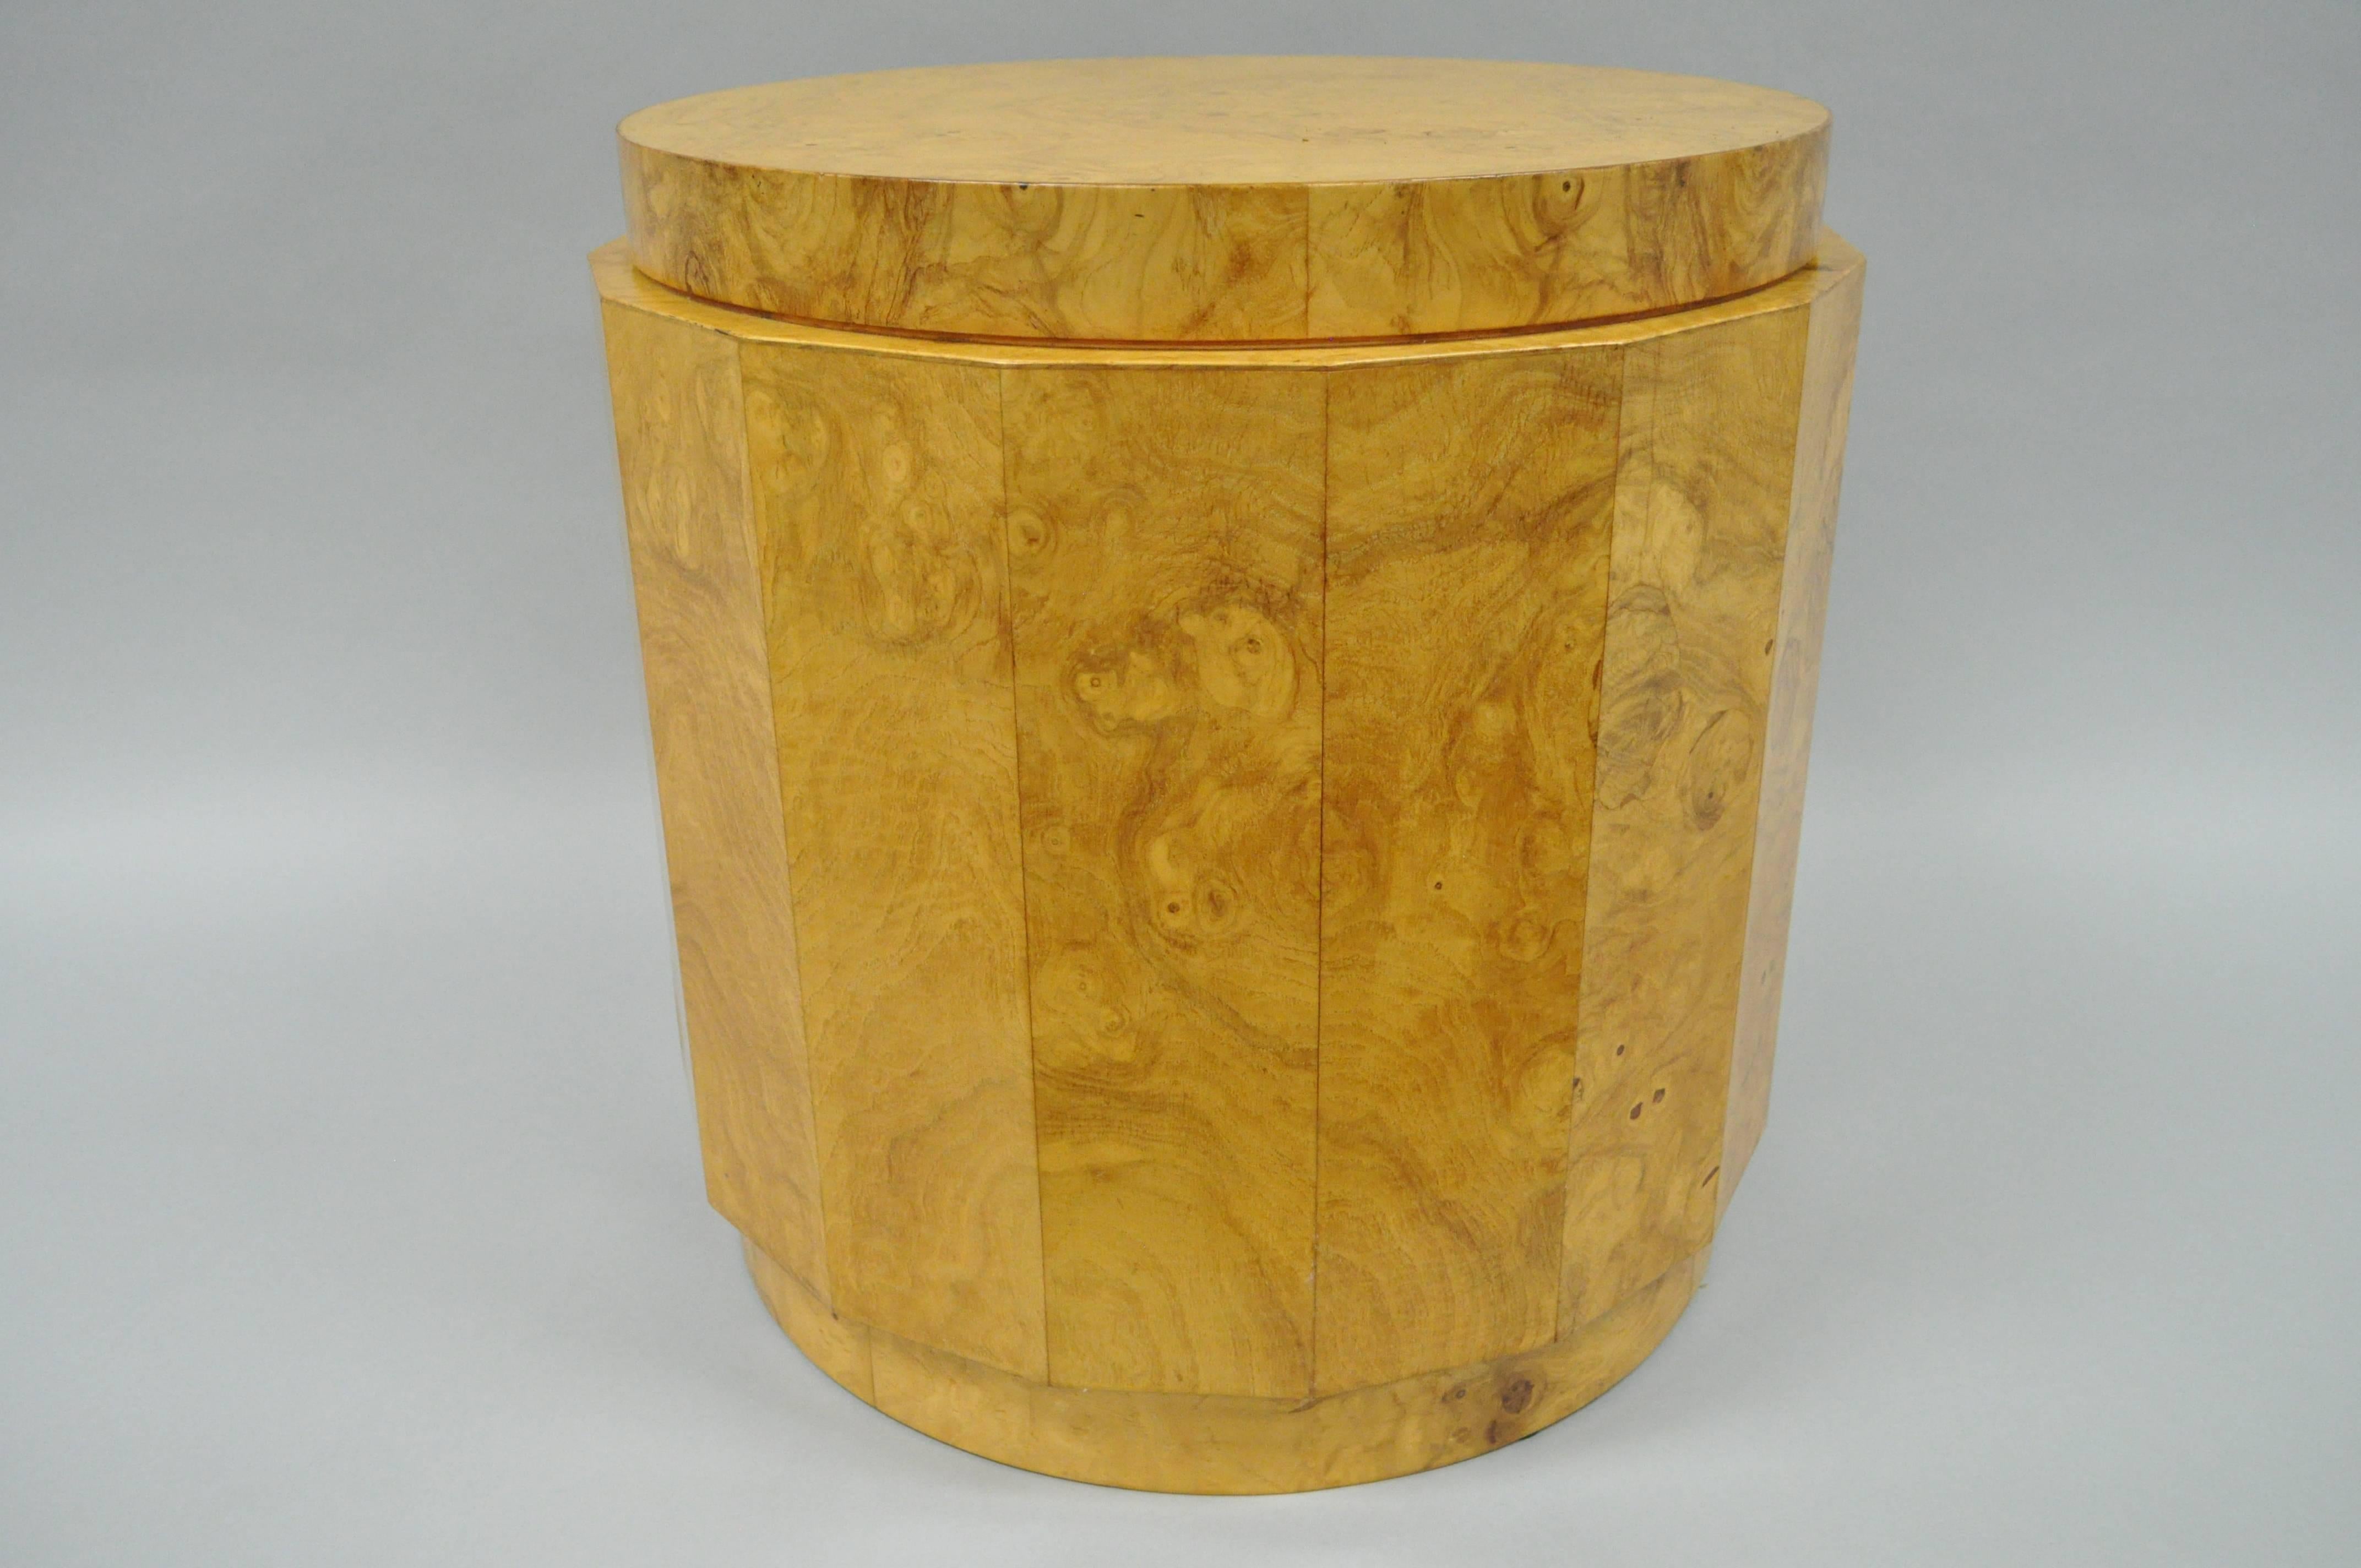 Table d'appoint vintage en bois de ronce Edward Wormley for dunbar 6302F. L'article présente un bel extérieur en forme de colonne à facettes, un placage en bois de ronce figuré et les étiquettes d'origine.